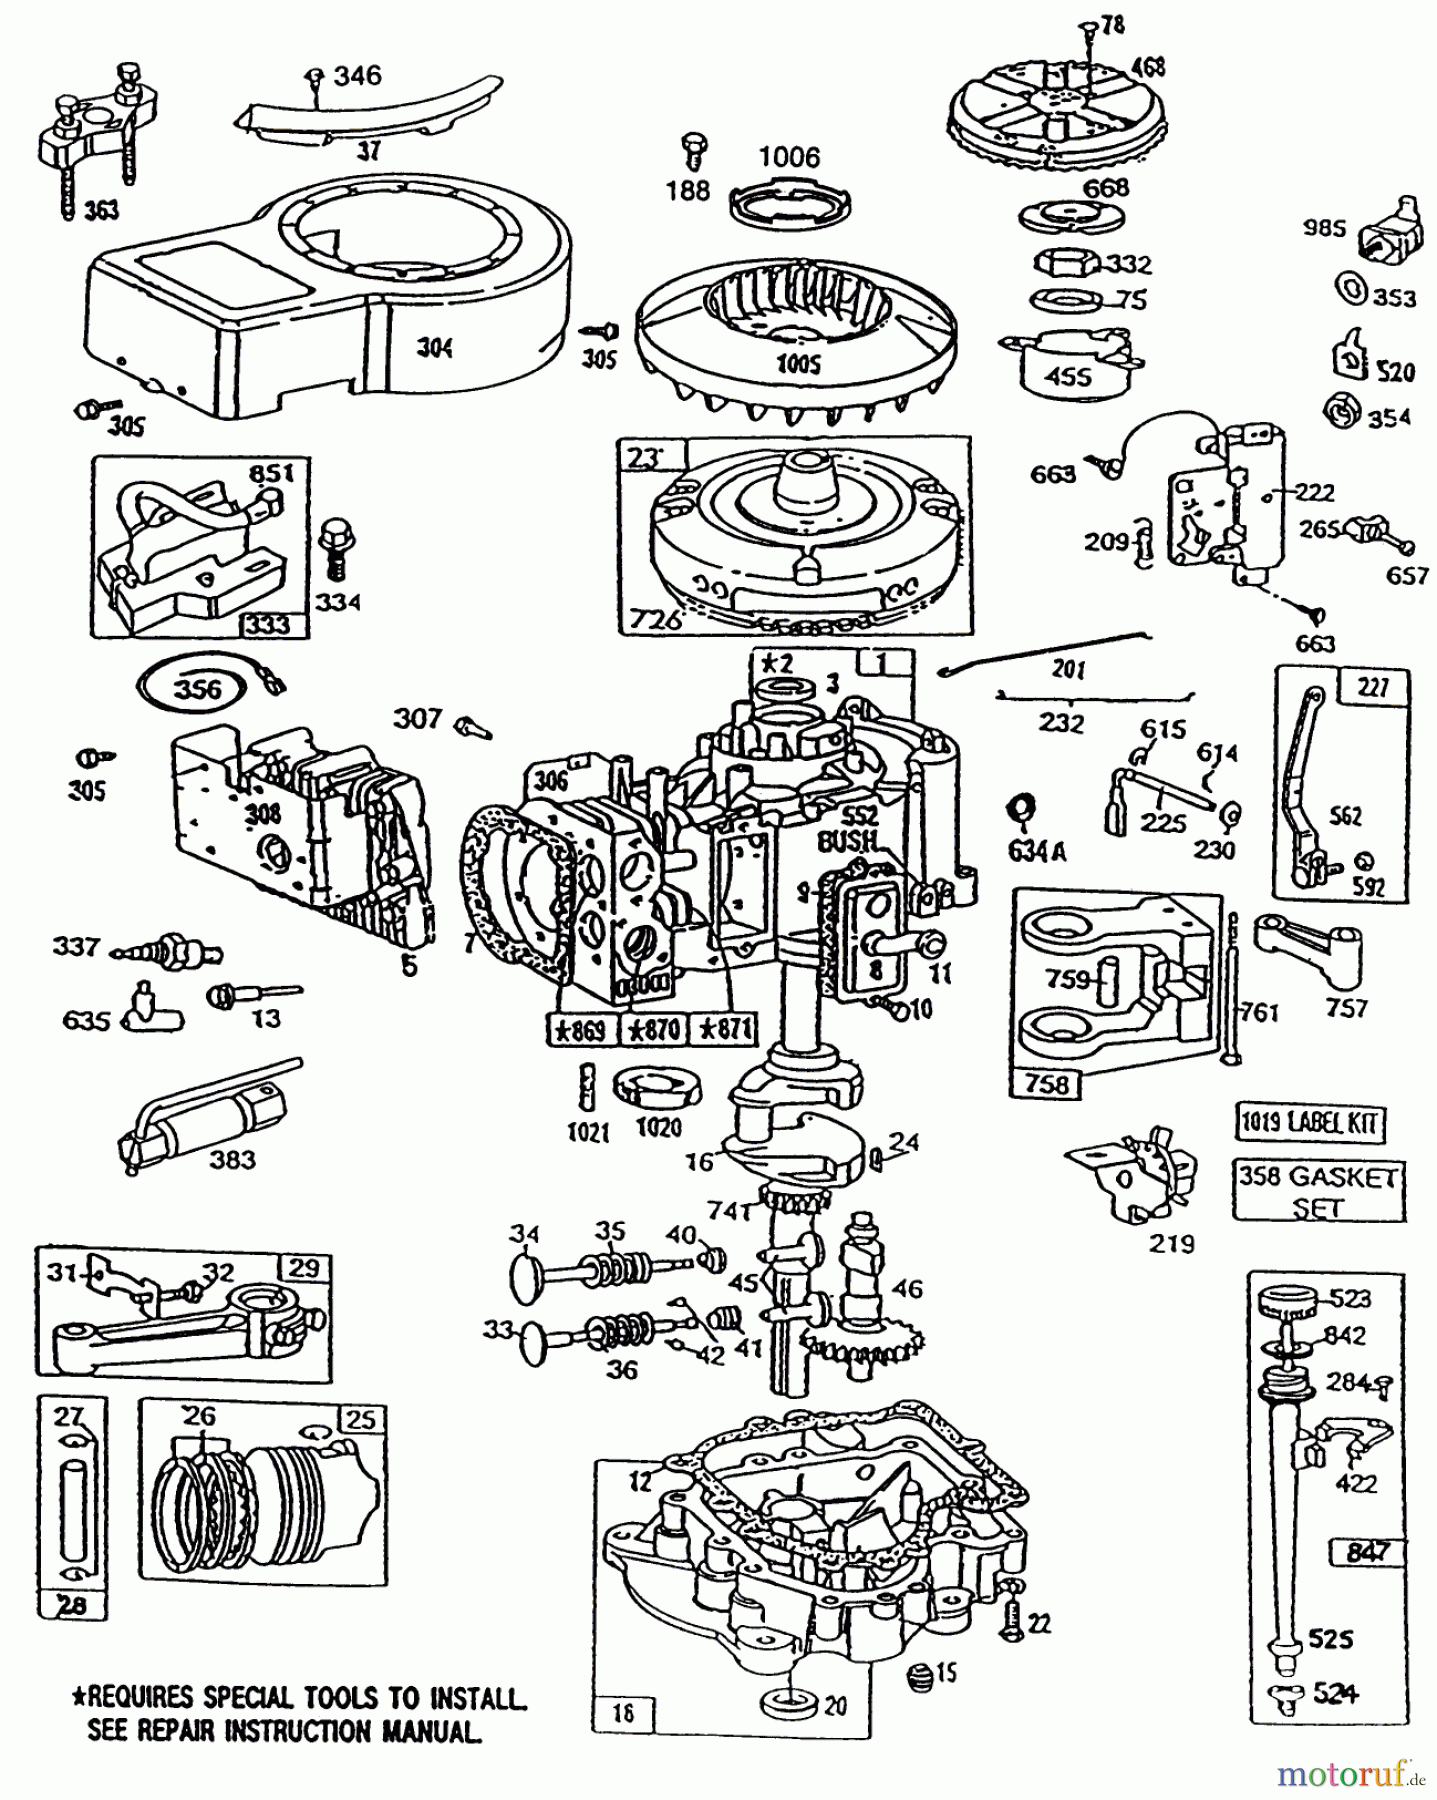  Toro Neu Mowers, Lawn & Garden Tractor Seite 1 32-120EA1 (212-H)- Toro 212-H Tractor, 1991 (1000001-1999999) ENGINE BRIGGS AND STRATTON MODEL 281707-0226-01 #1